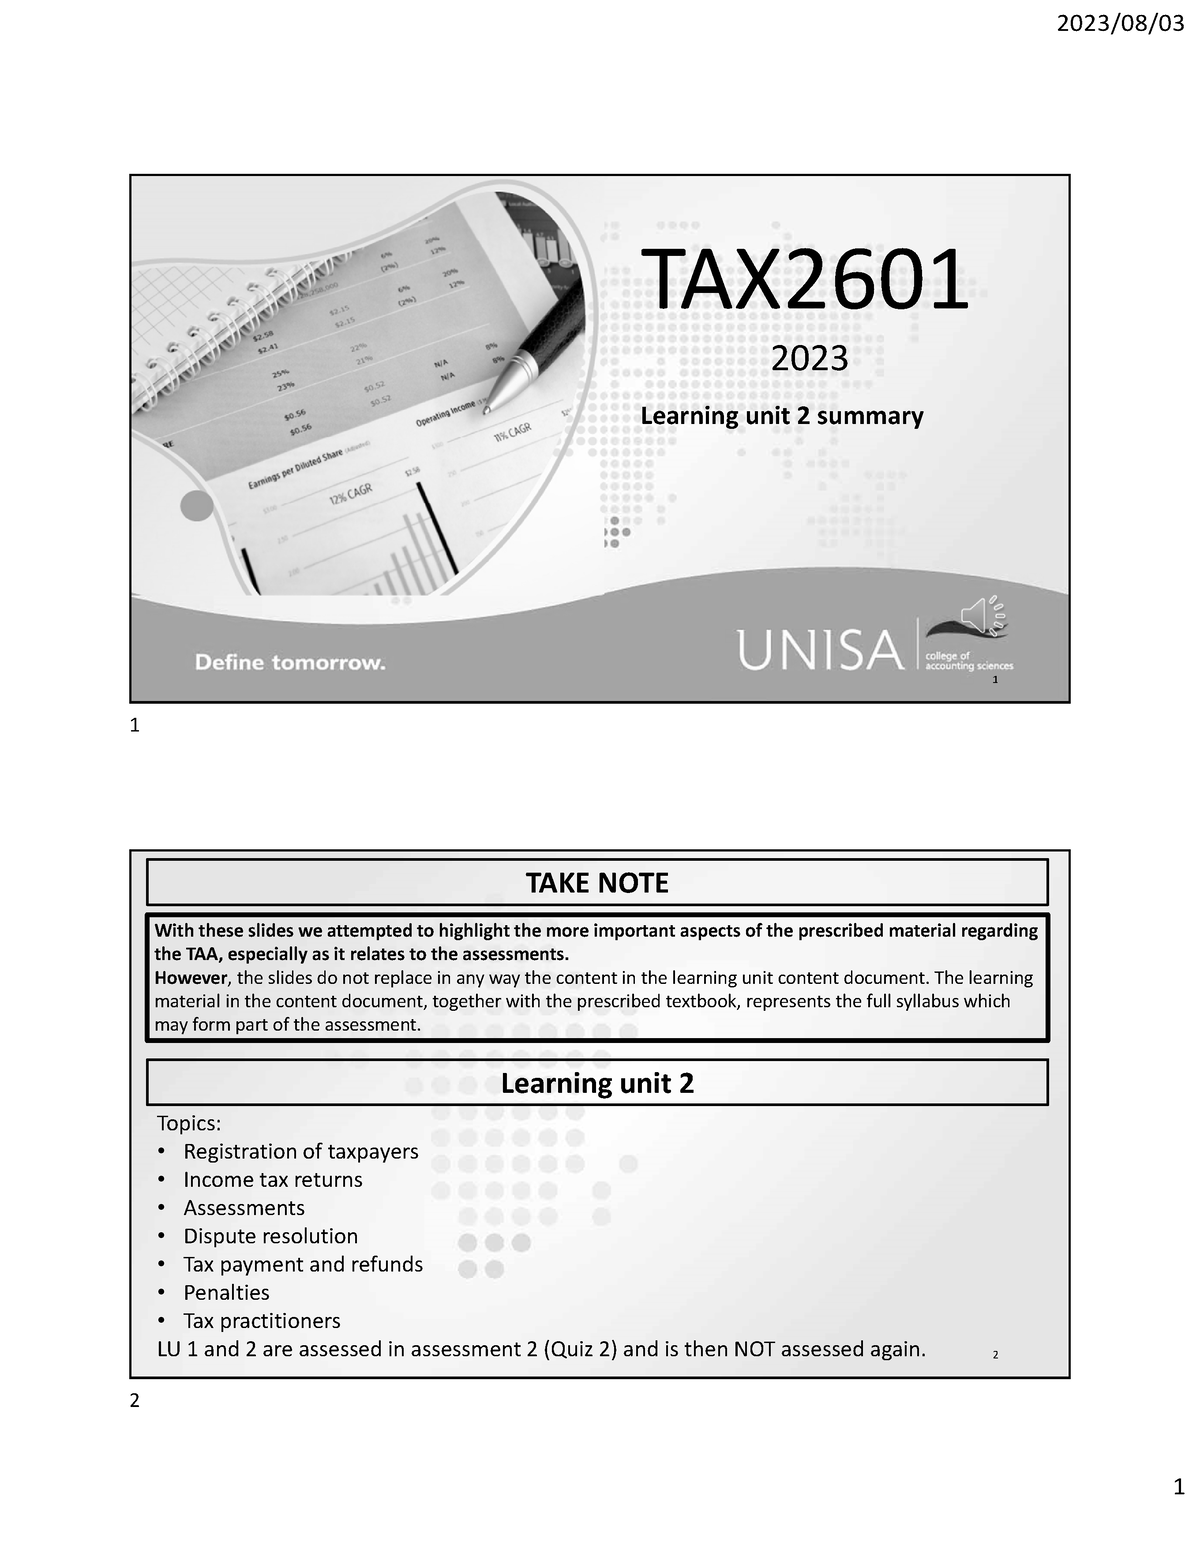 tax2601 assignment 5 semester 2 2023